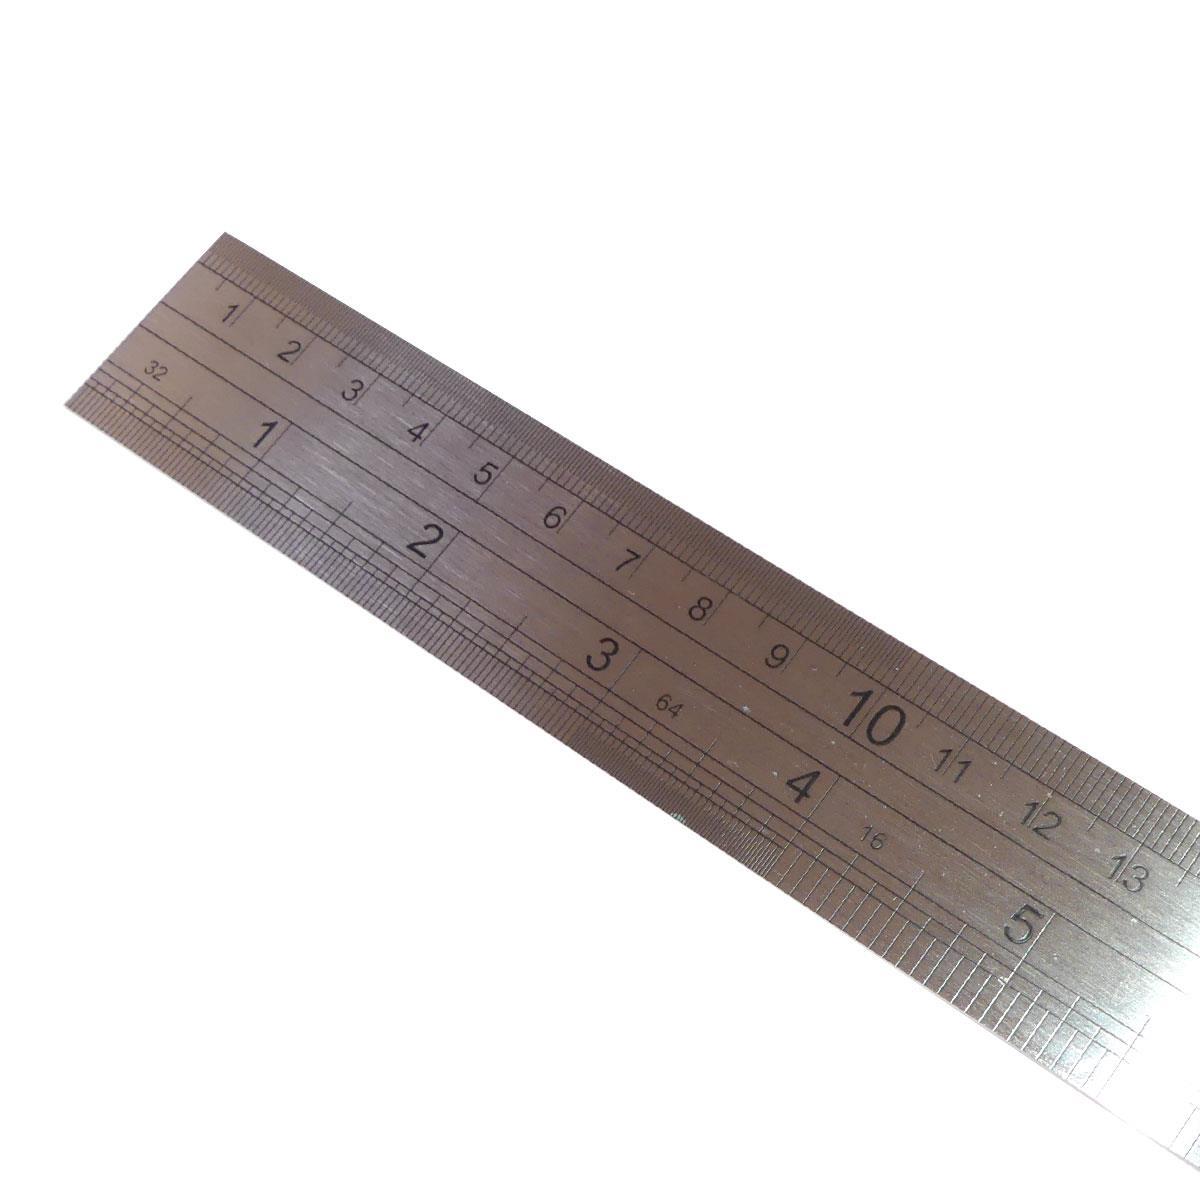 Regla para medir costuras 21 cm - Mercería La Costura